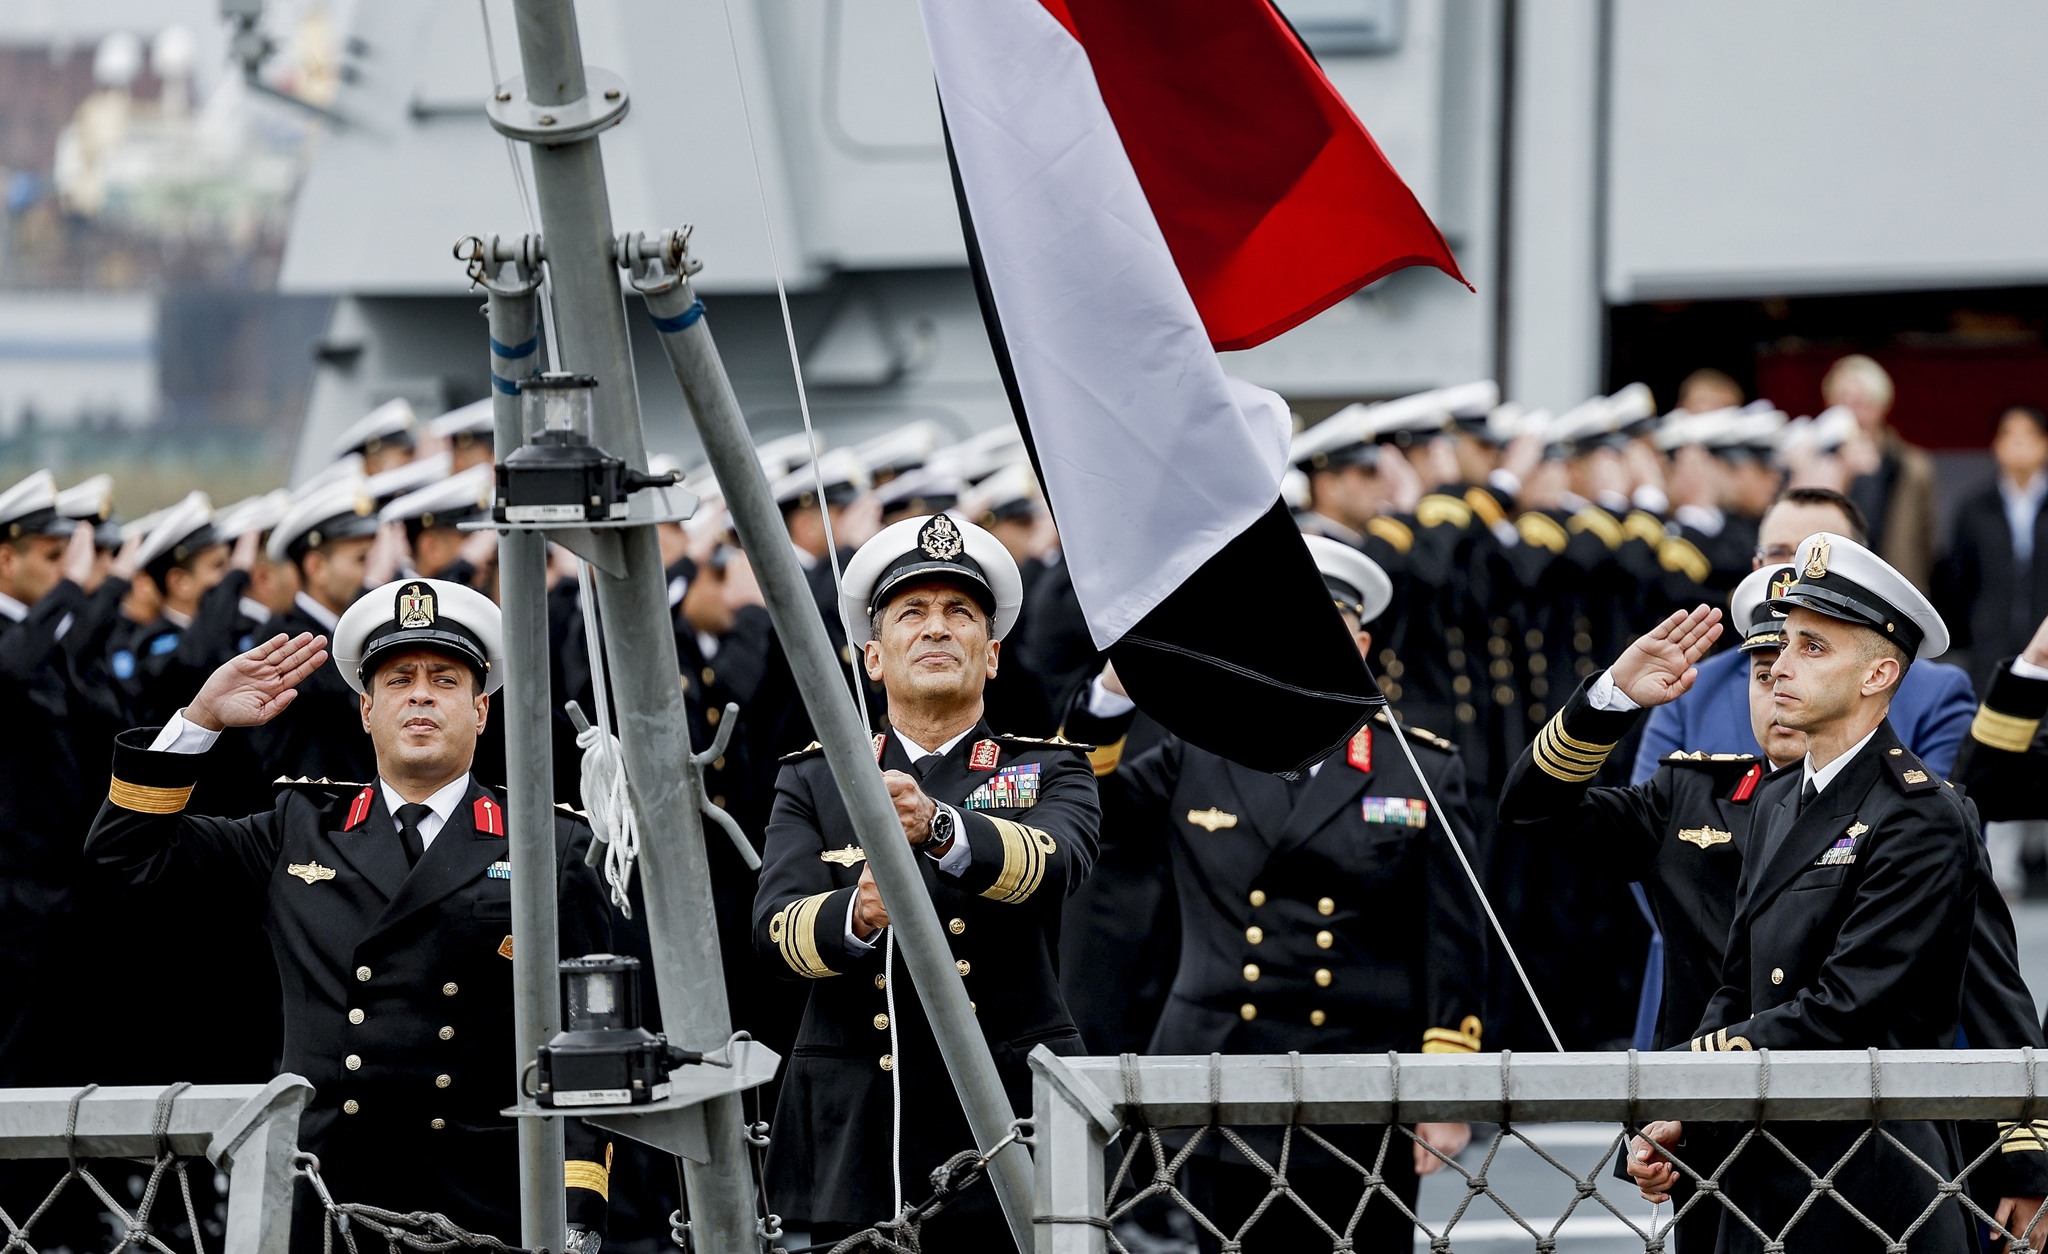 قائد القوات البحرية يرفع العلم المصري على الفرقاطة " العزيز"